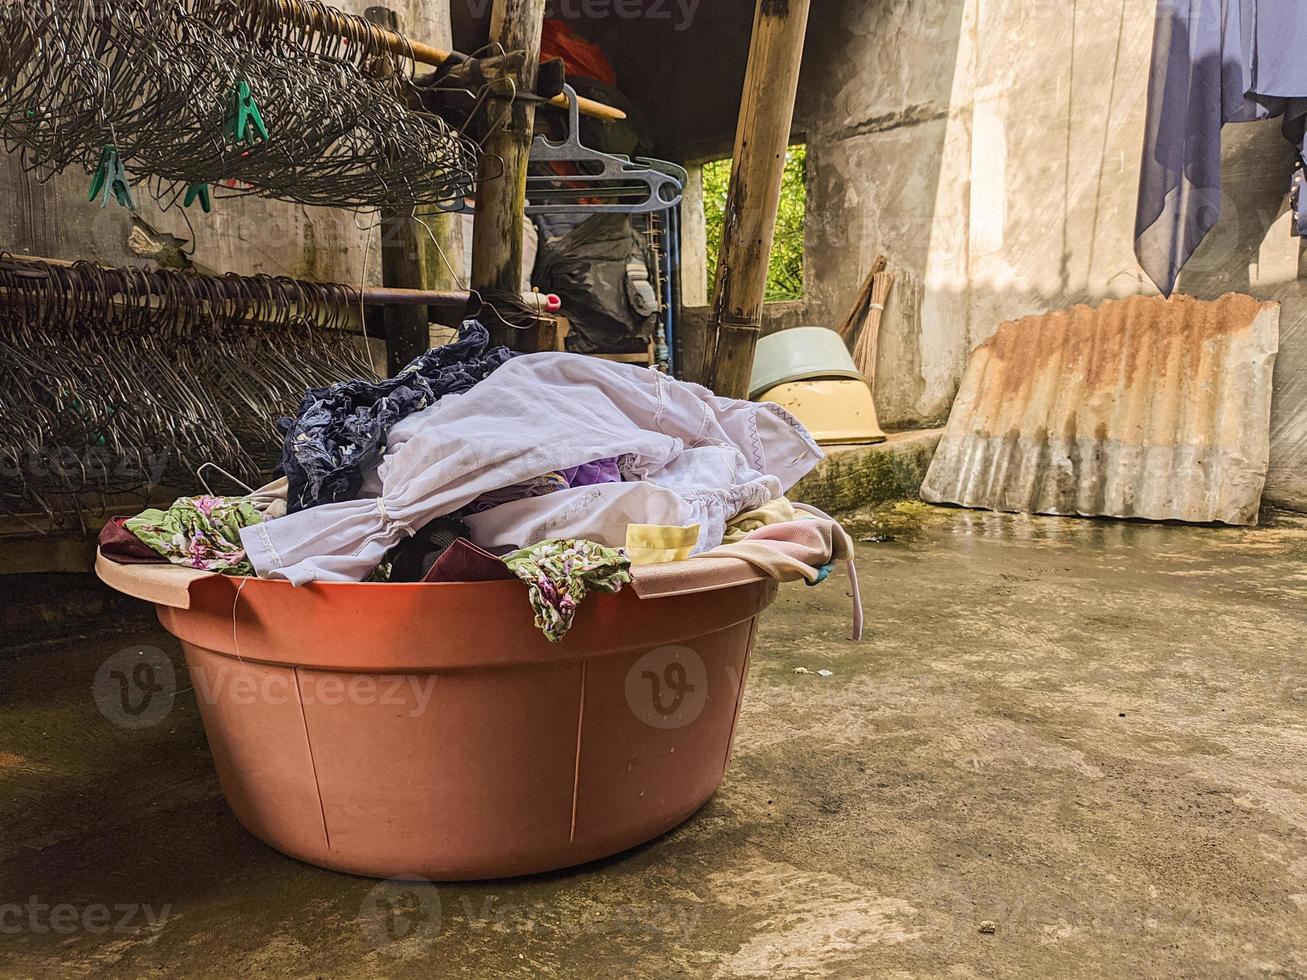 ungewaschene Schmutzwäsche stapelt sich. ein Haufen schmutziger Kleidung, die seit vielen Tagen nicht gewaschen wurde. das wirkliche Leben am Ende des Jahres foto